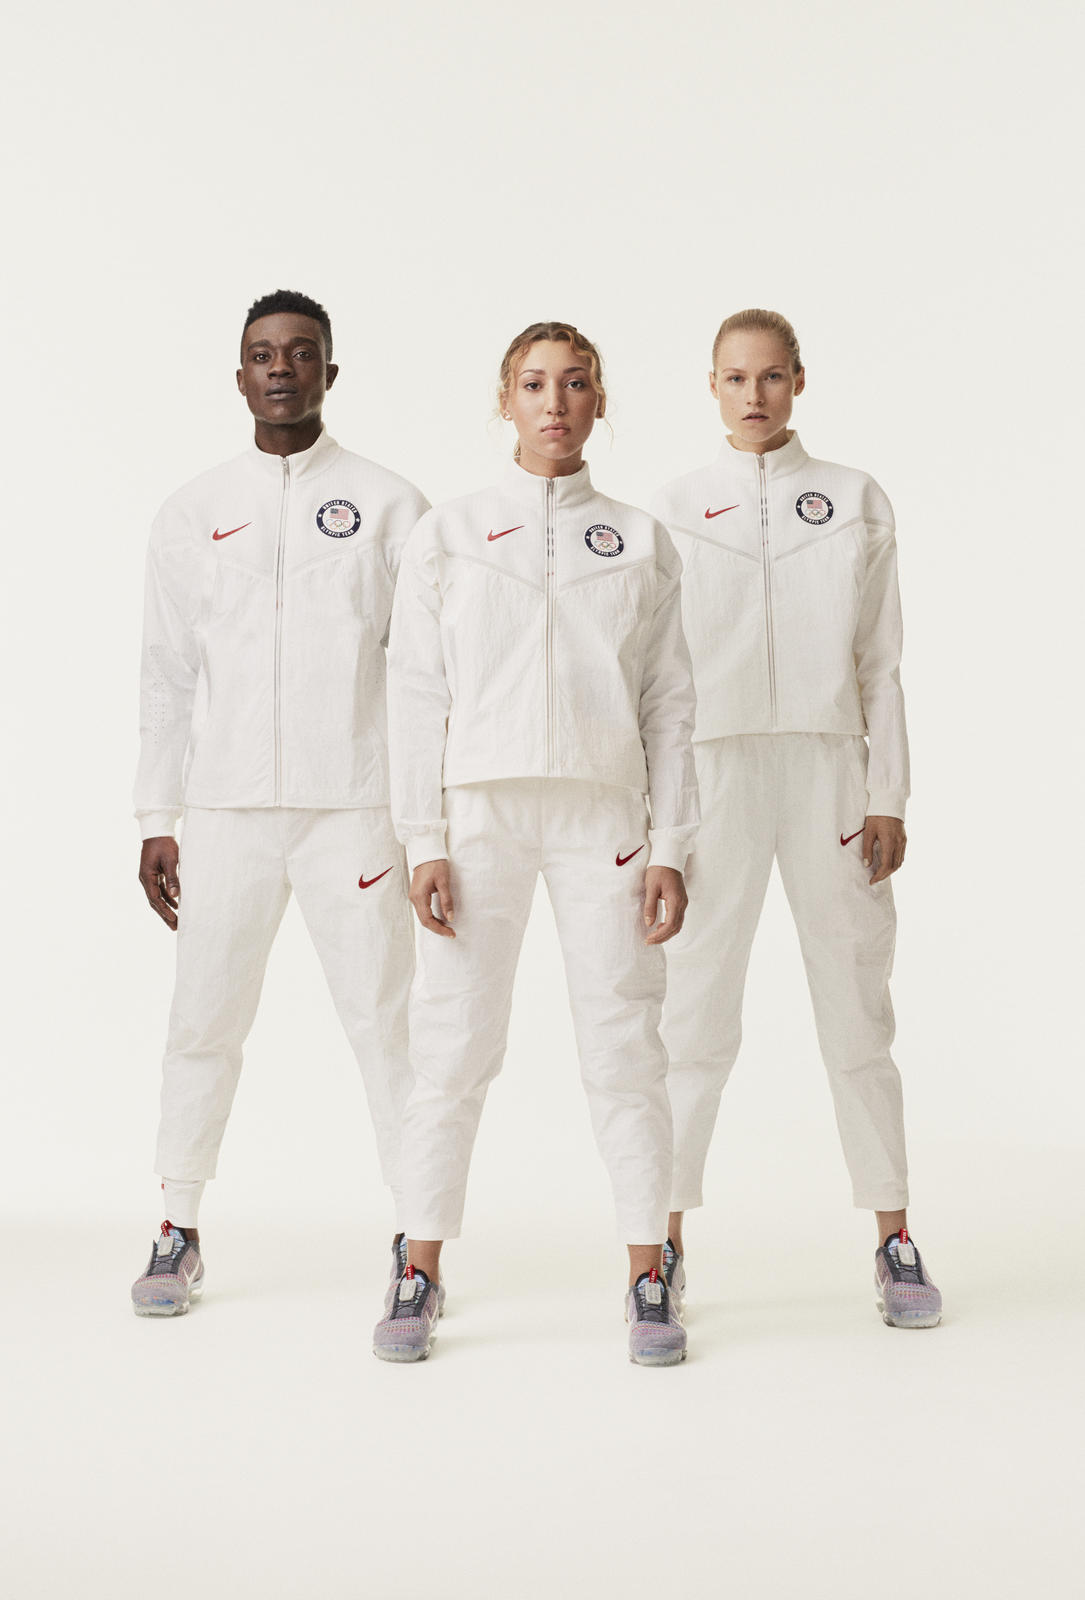 Nike 環境に配慮した チームusa メダルスタンドコレクション発表 Highsnobiety Jp ハイスノバイエティ